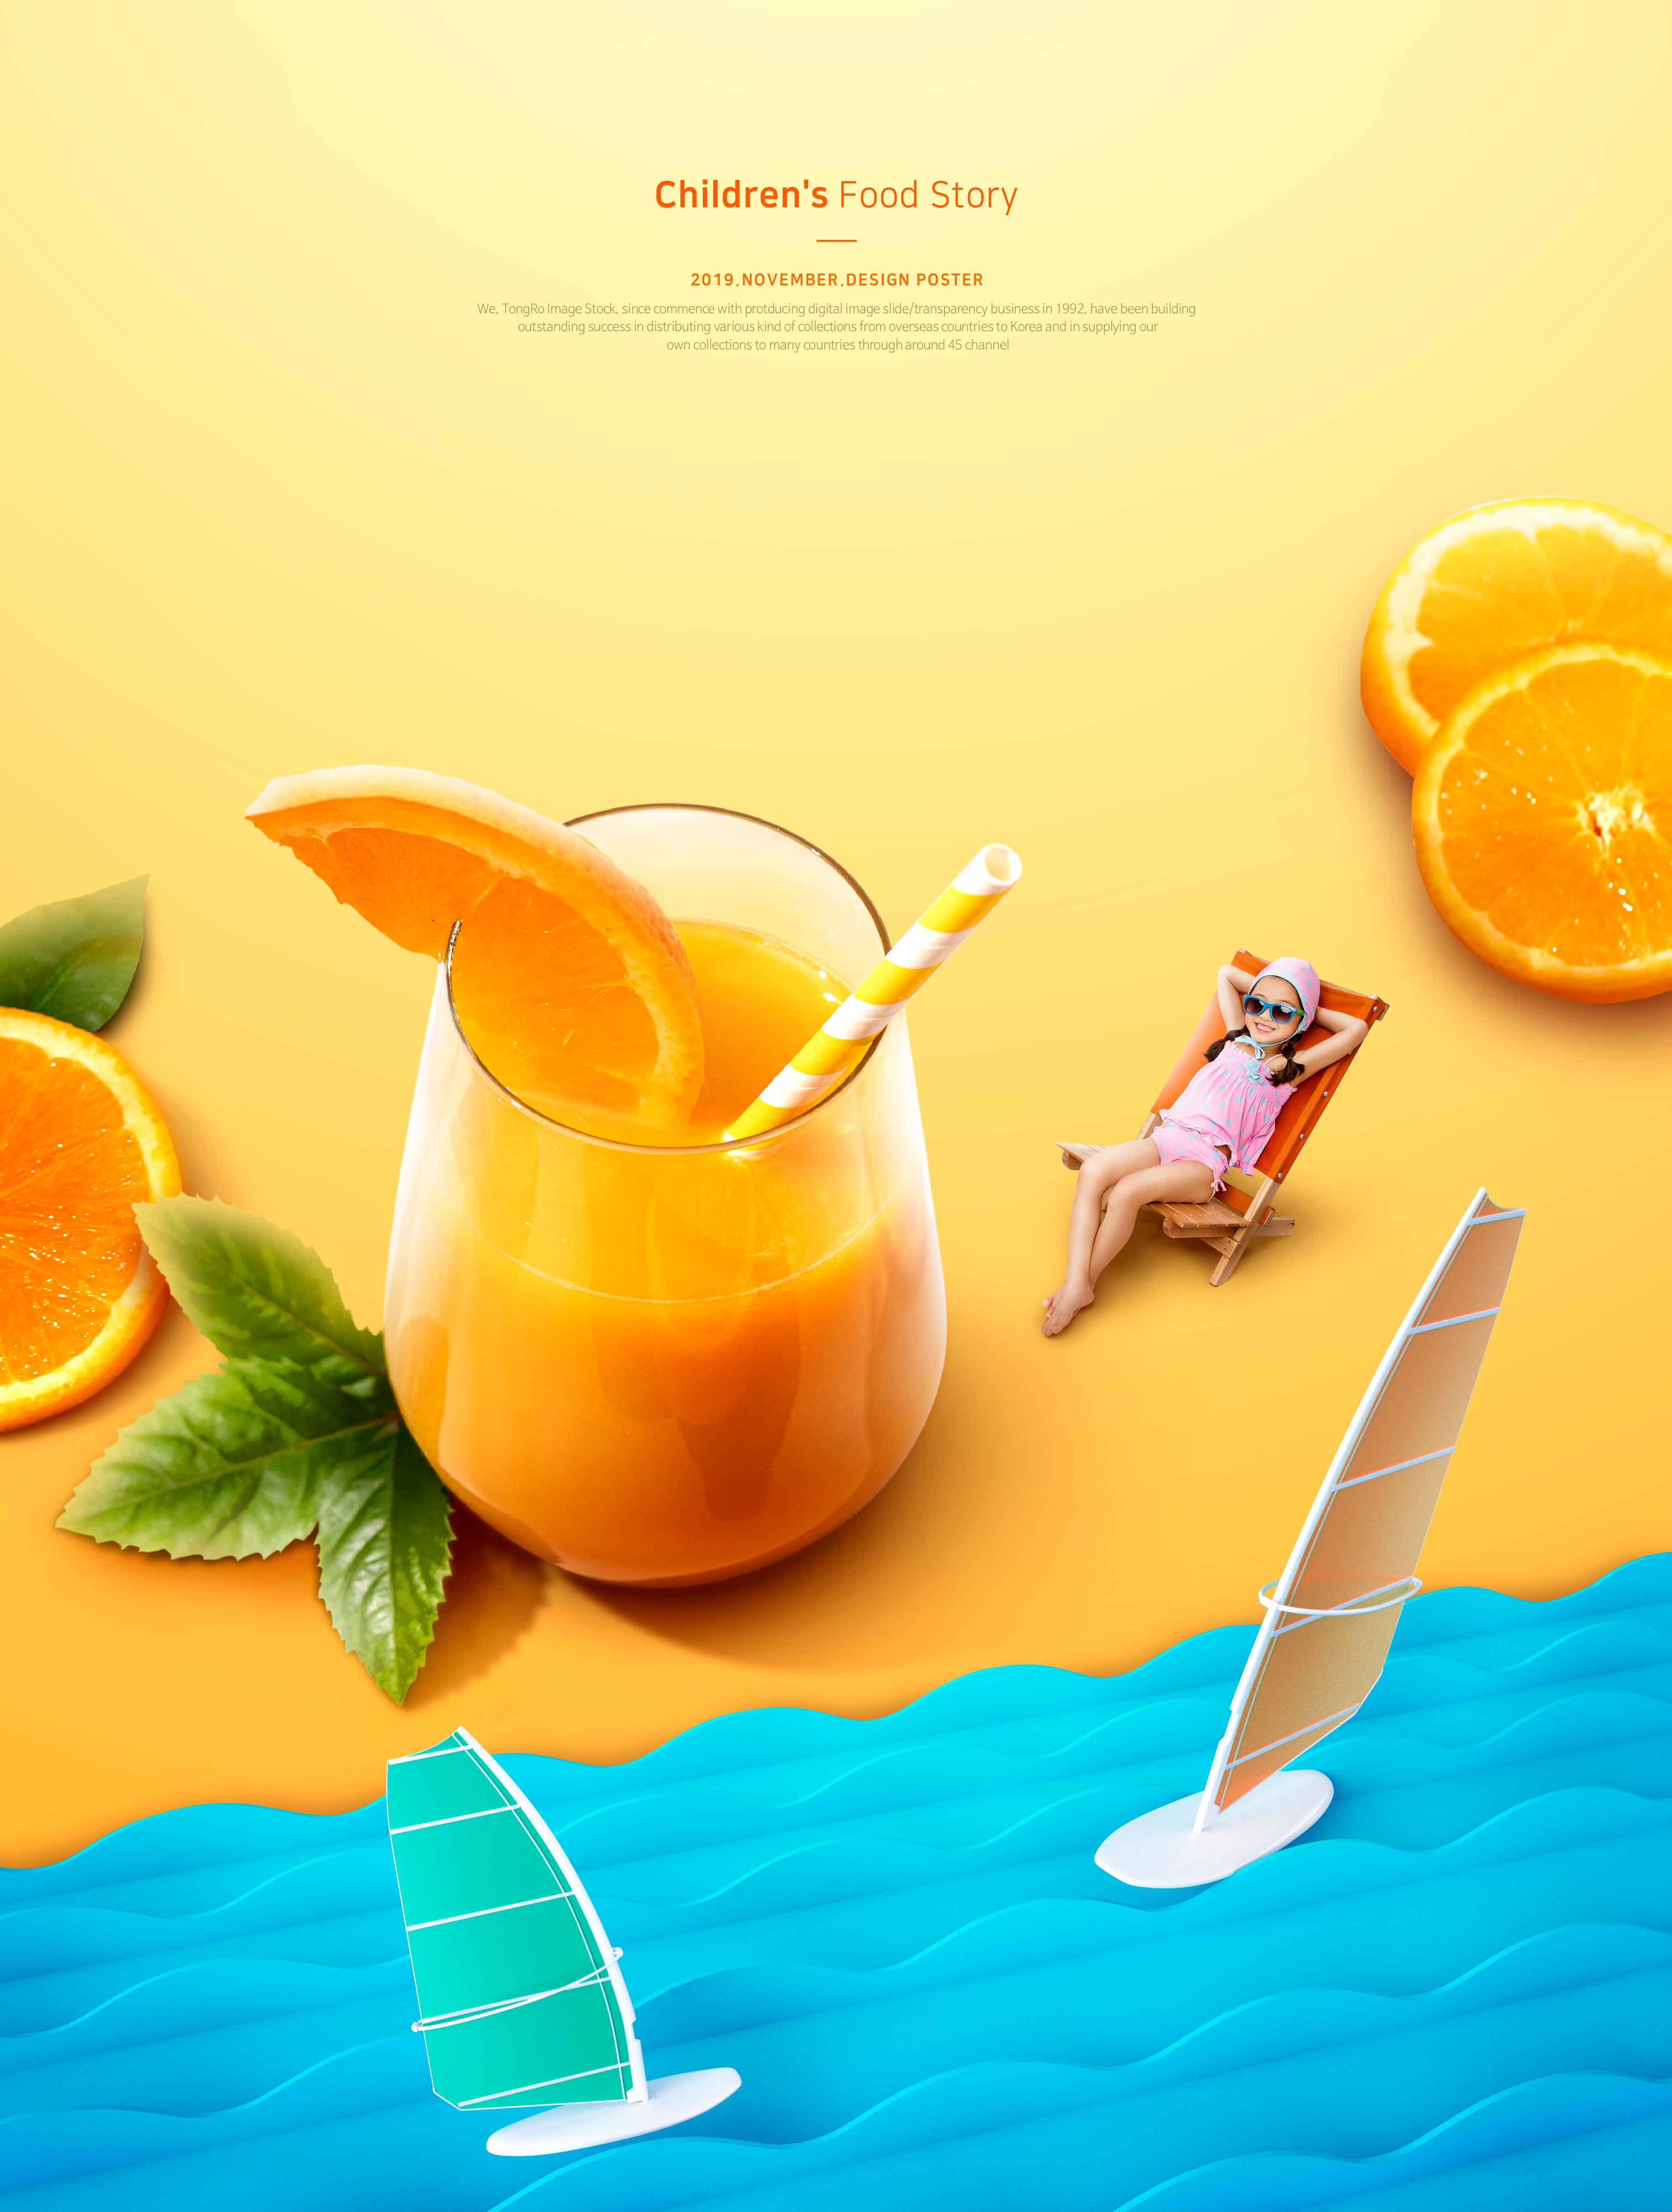 儿童食品故事夏季橙汁推广海报PSD素材大洋岛精选模板插图